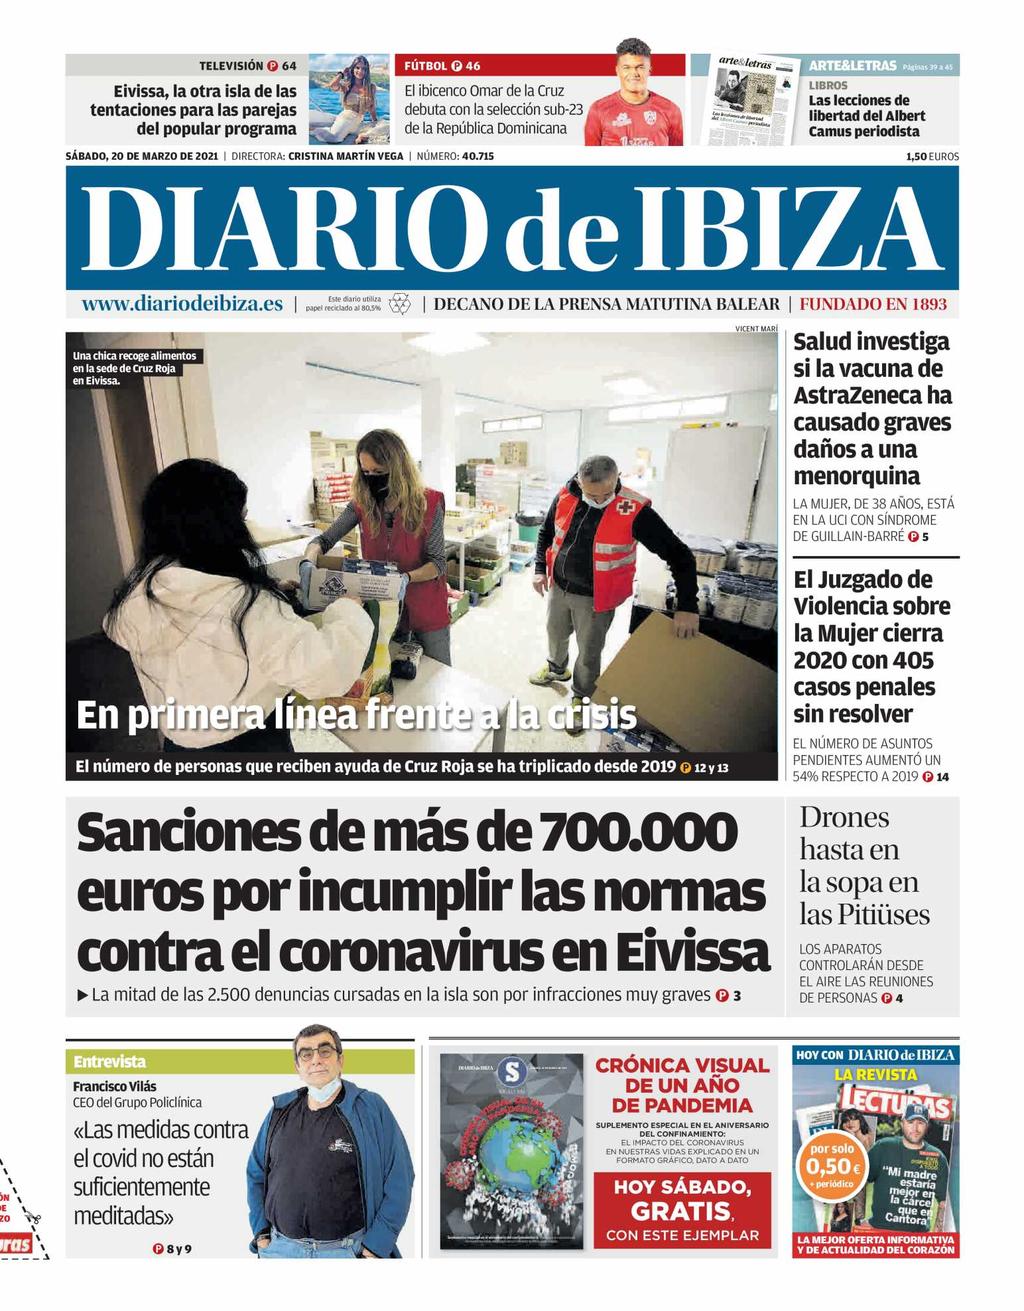 Diario de Ibiza Mallorca Tirada: 3.429 Dif: 2.763 Secc: PORTADA Valor: 4.